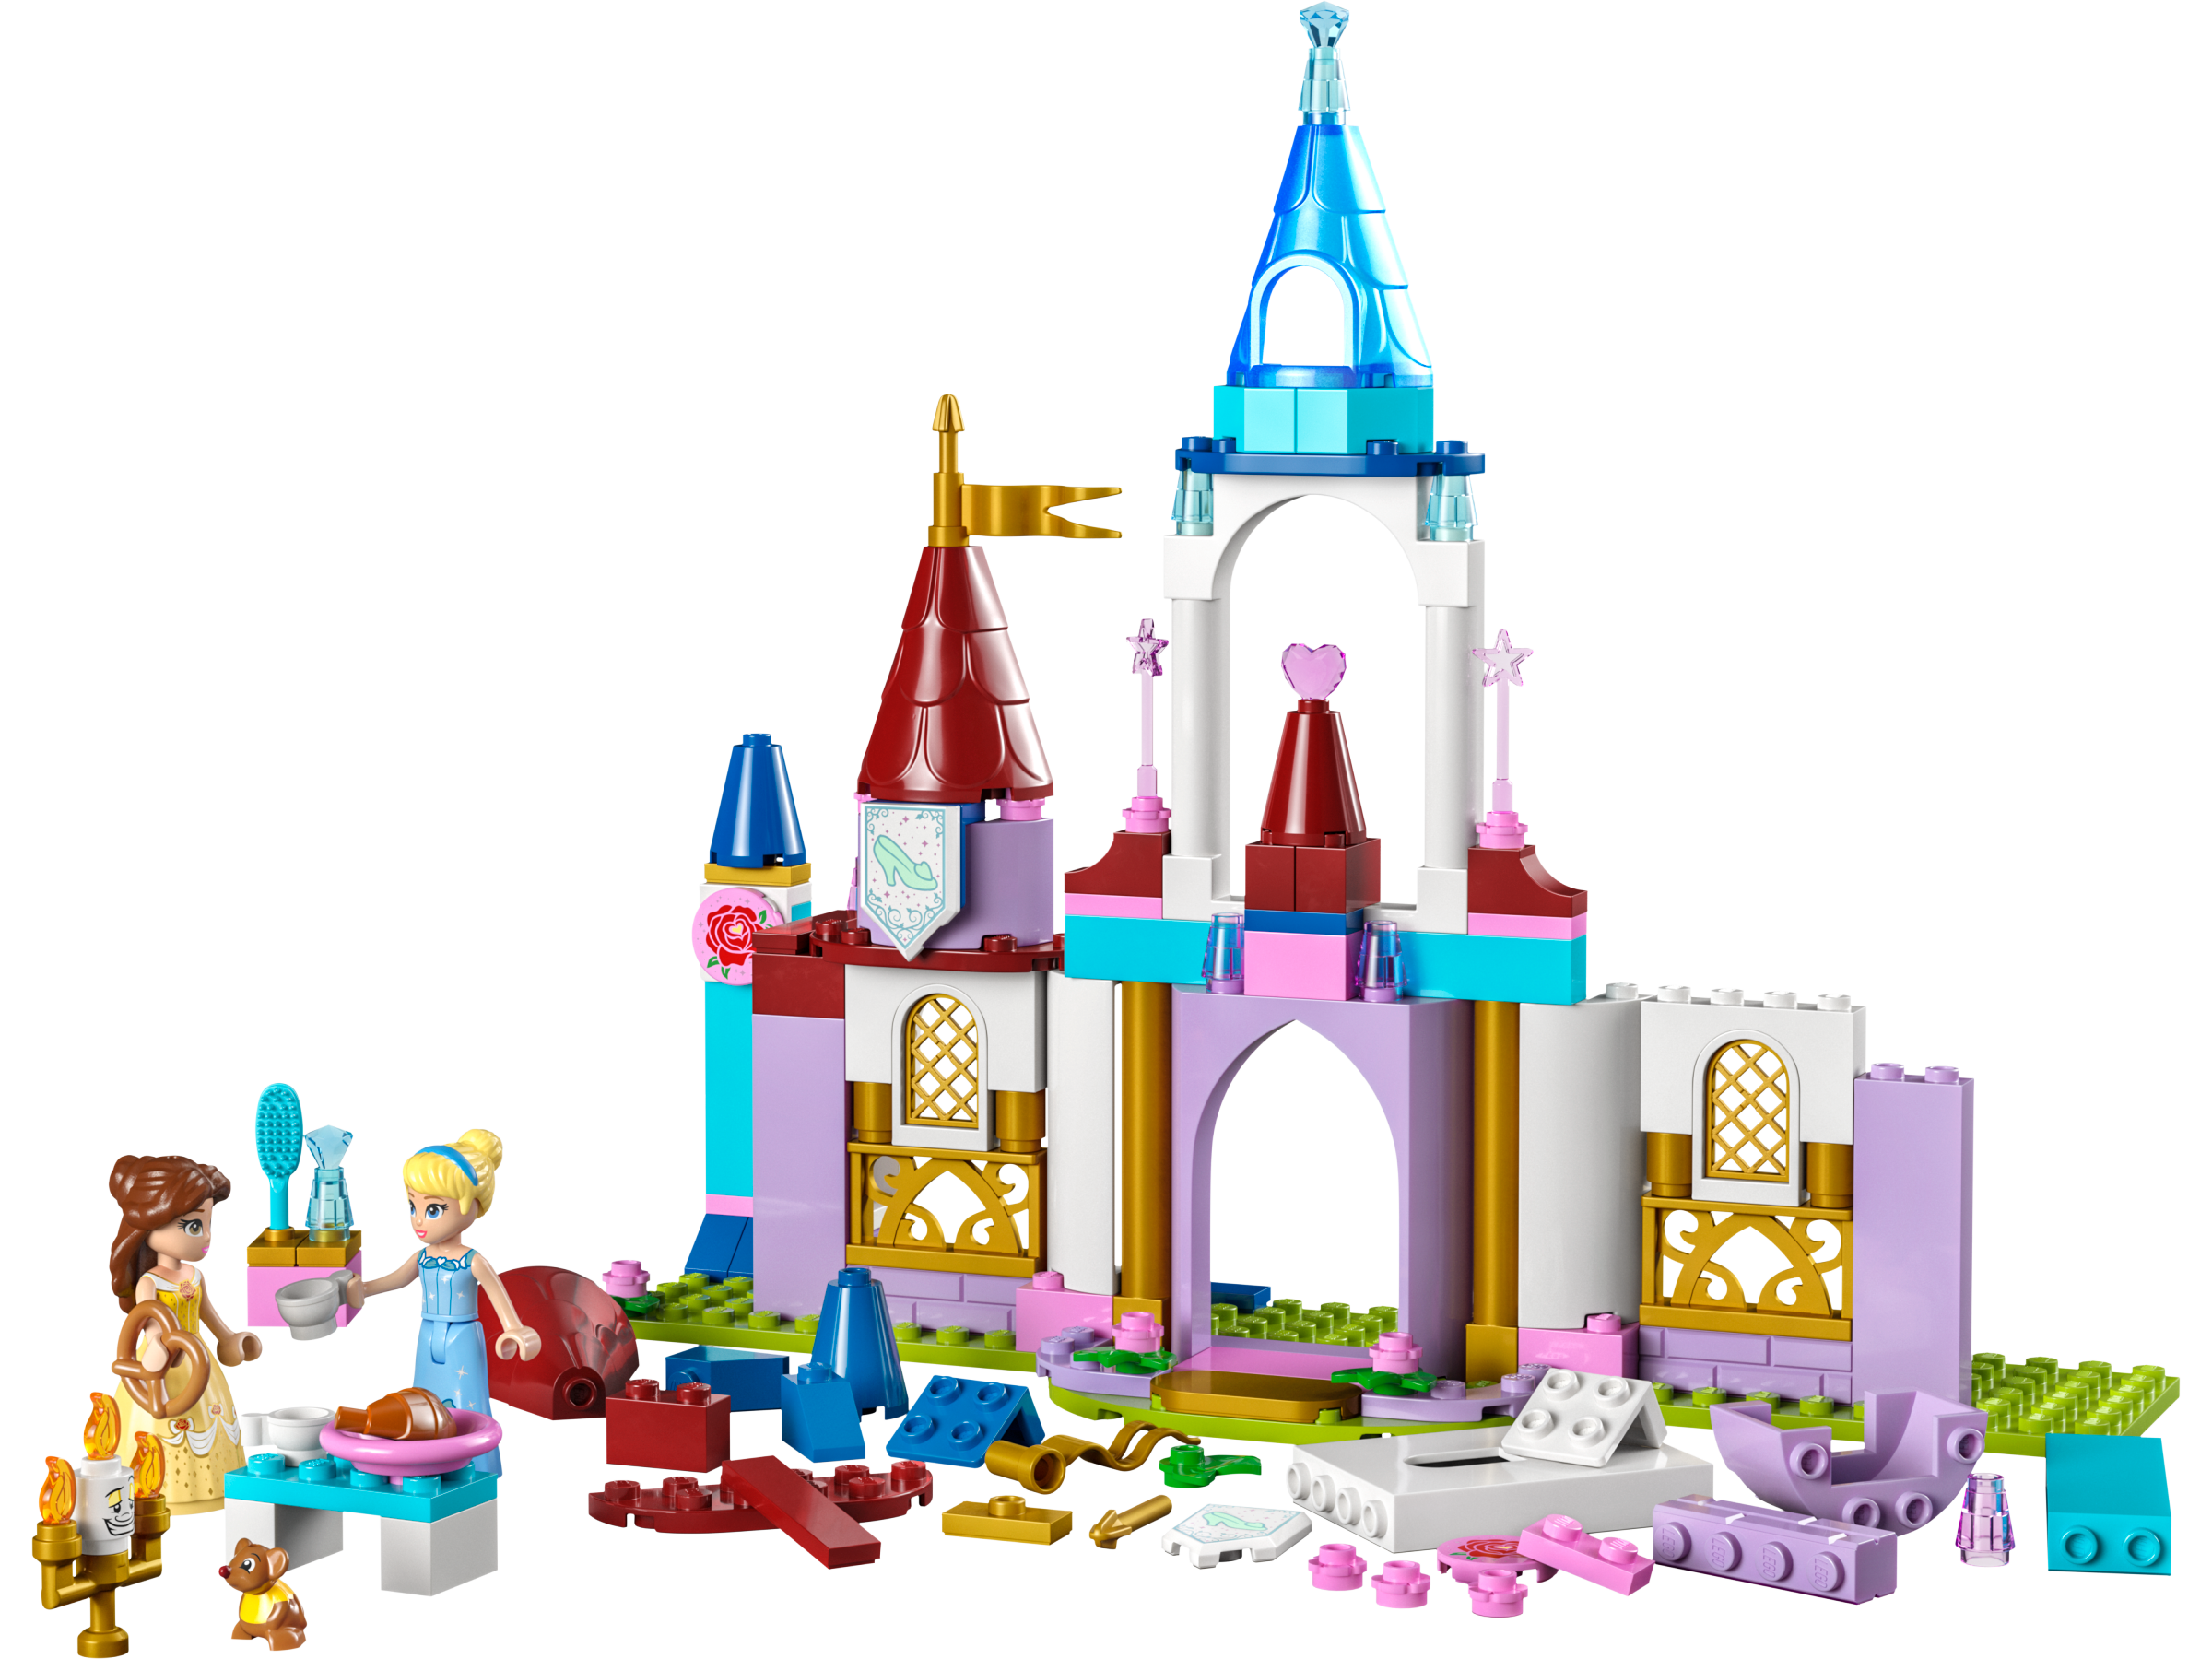 ディズニー プリンセス おとぎのお城 43219 | ディズニー™ |レゴ ...